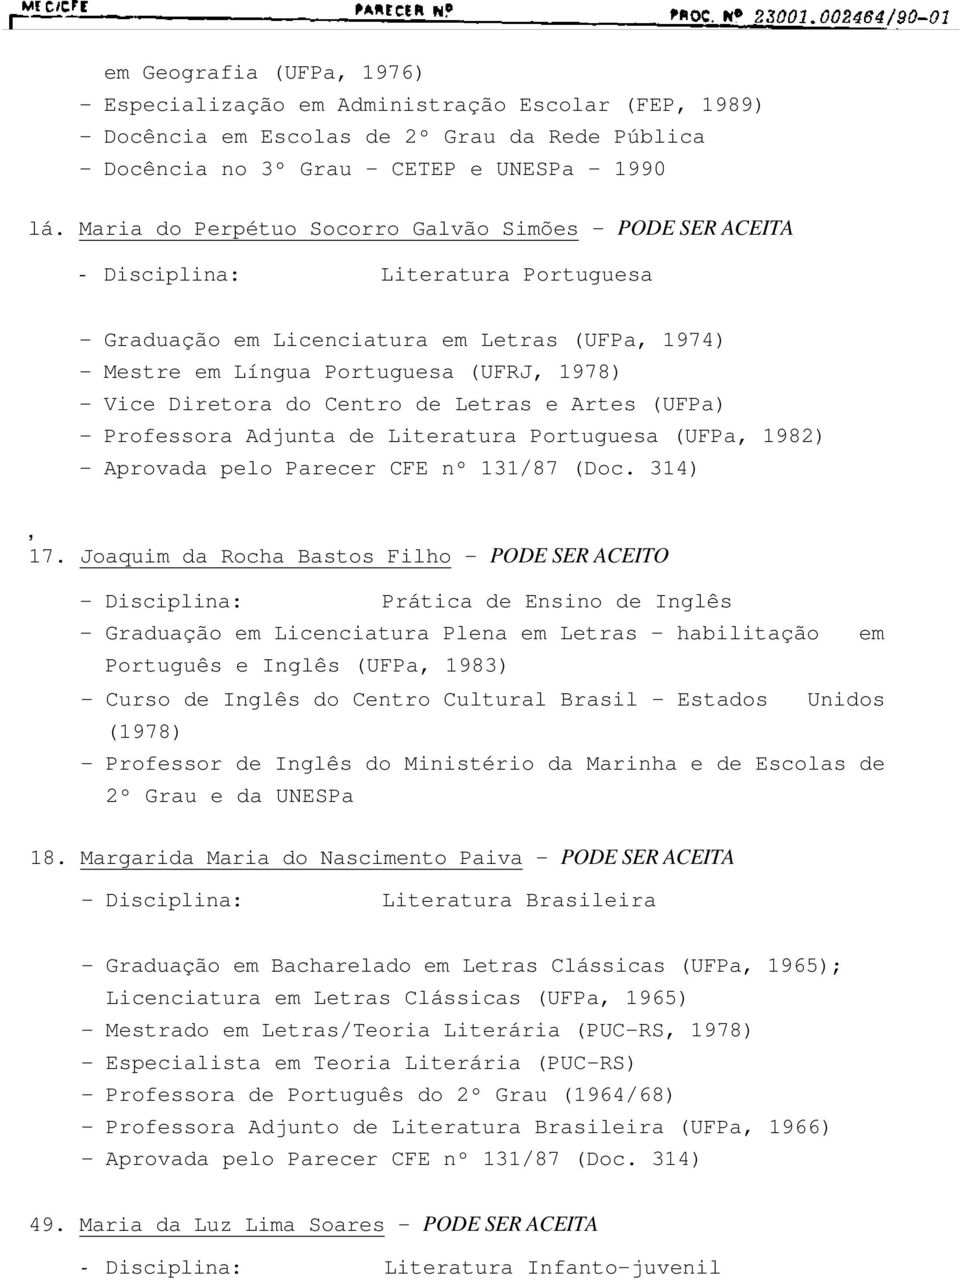 Diretora do Centro de Letras e Artes (UFPa) - Professora Adjunta de Literatura Portuguesa (UFPa, 1982) - Aprovada pelo Parecer CFE nº 131/87 (Doc. 314), 17.